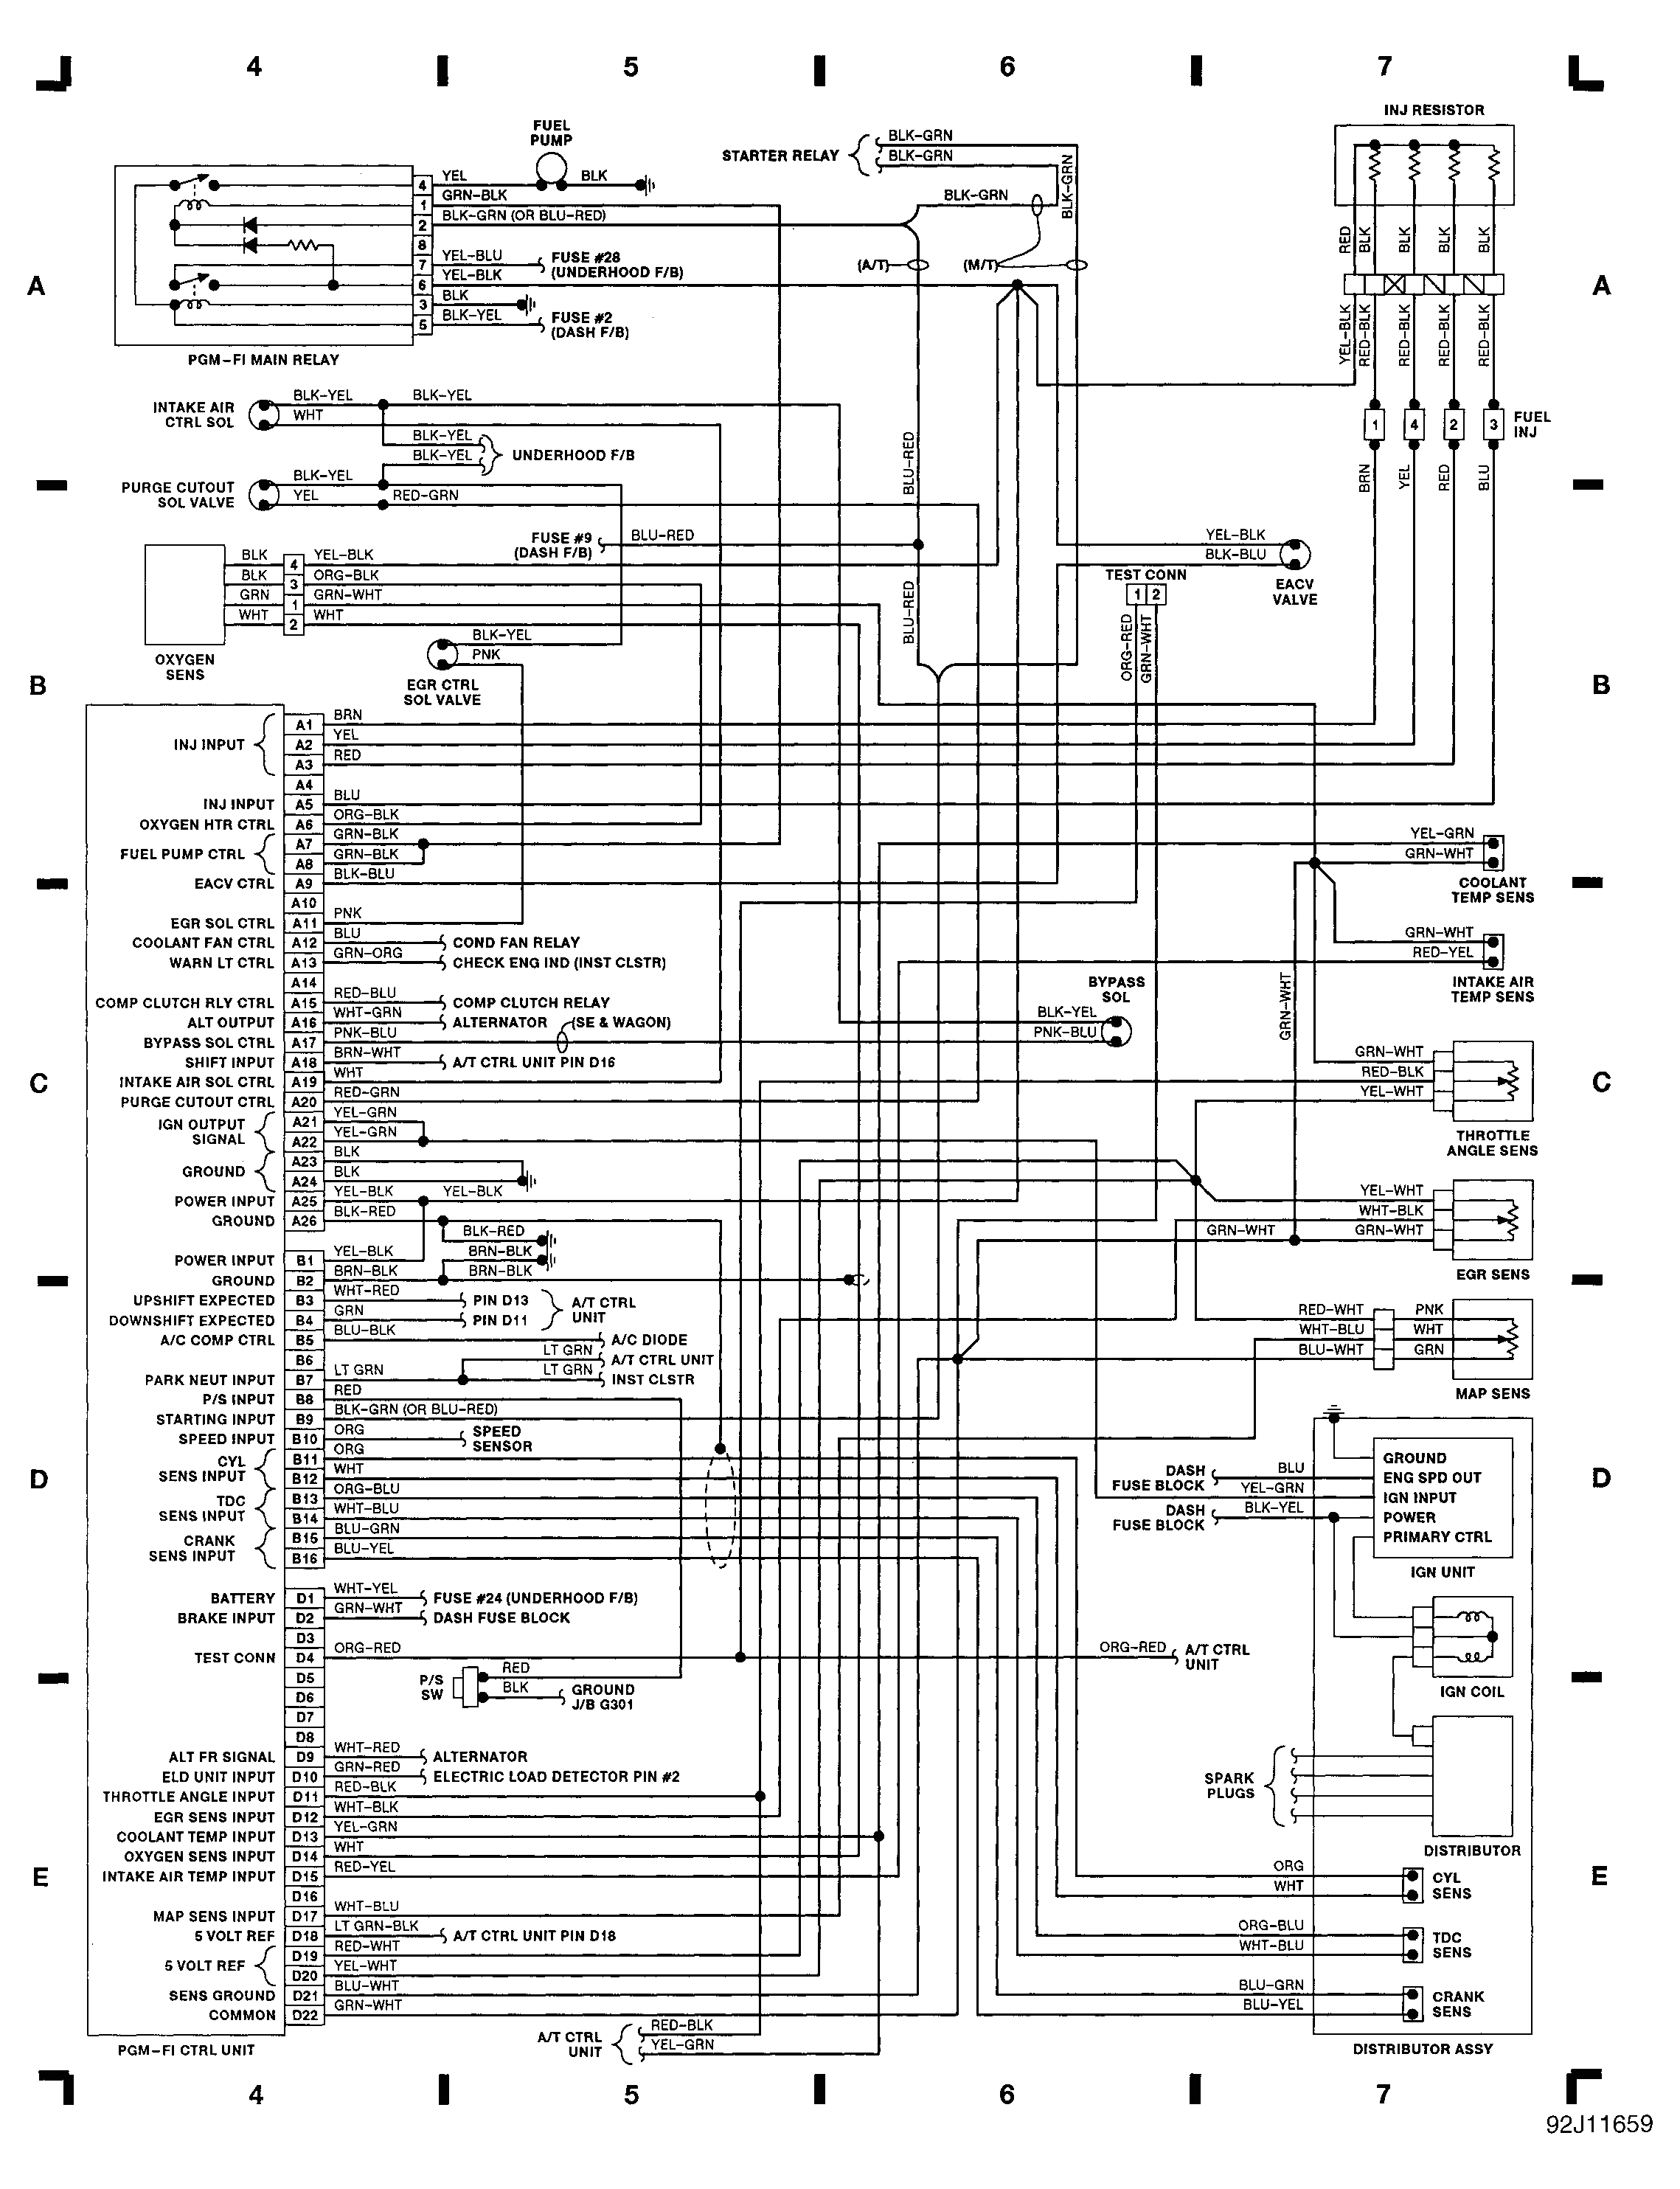 94 civic wiring diagram